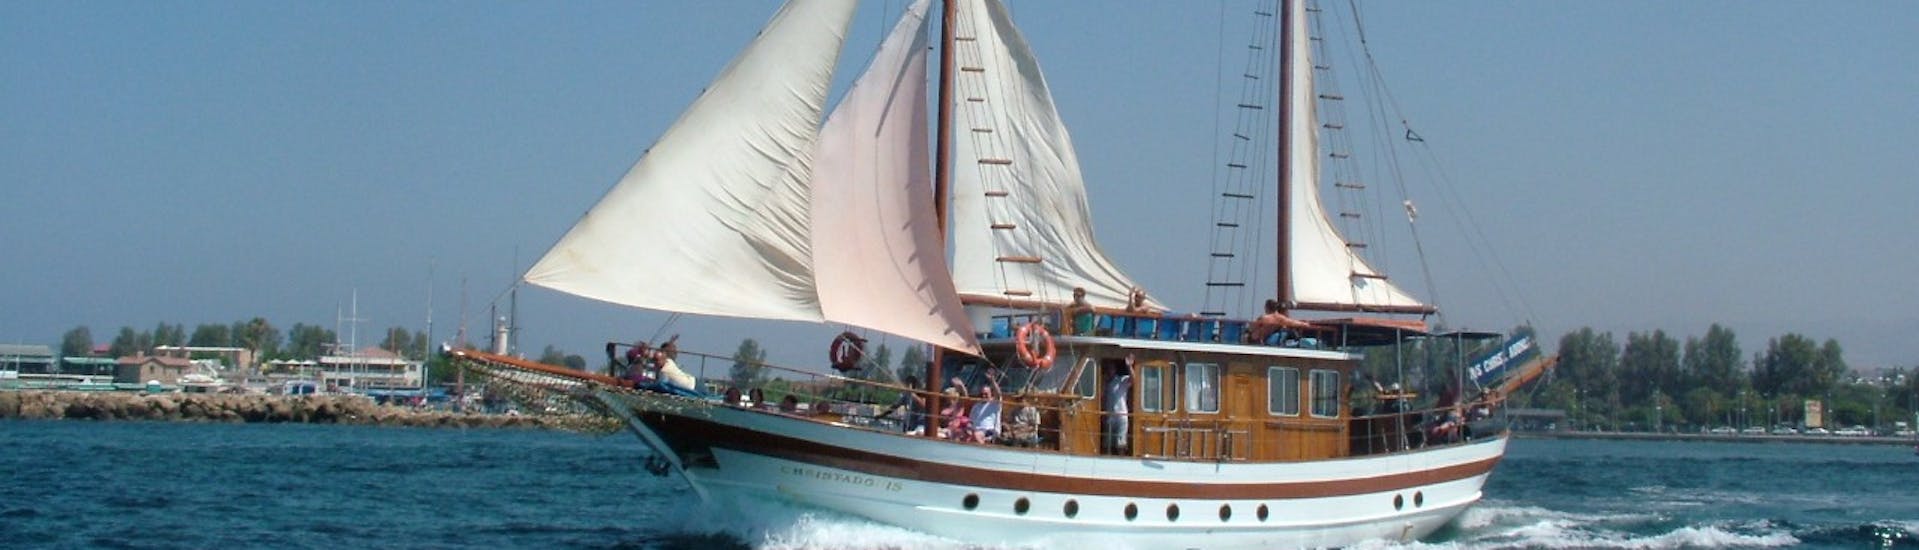 Zeilboottocht van Paphos naar Coral Bay (Peyia) met zwemmen & toeristische attracties.